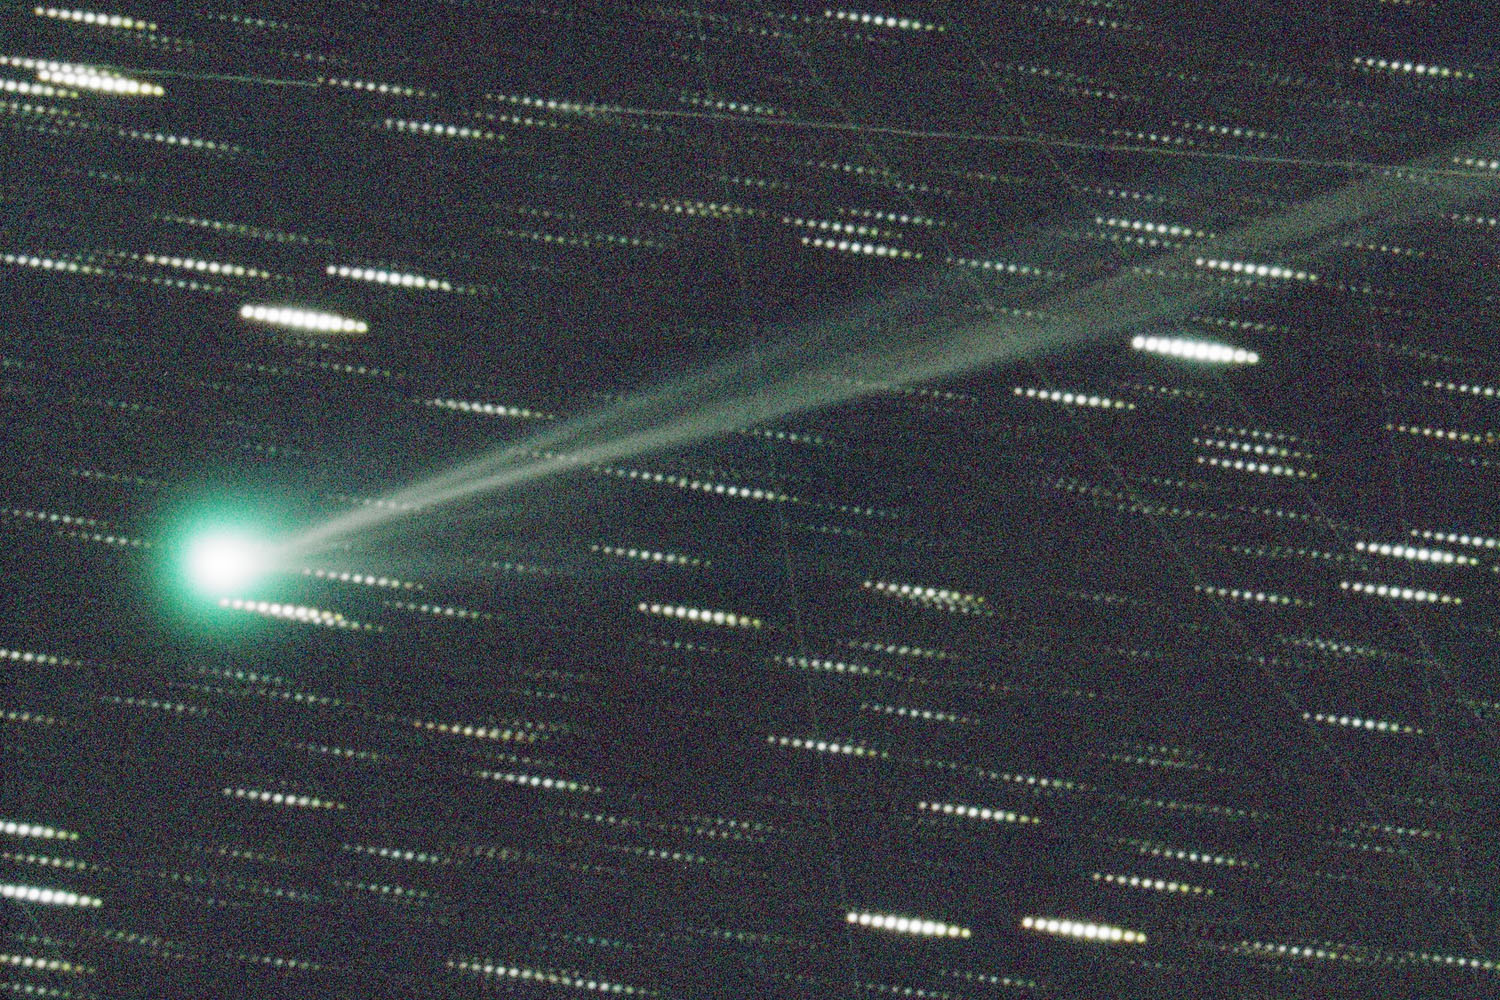 Комета C-2023 P1 (Nishimura), снятая 30 августа 2023 года